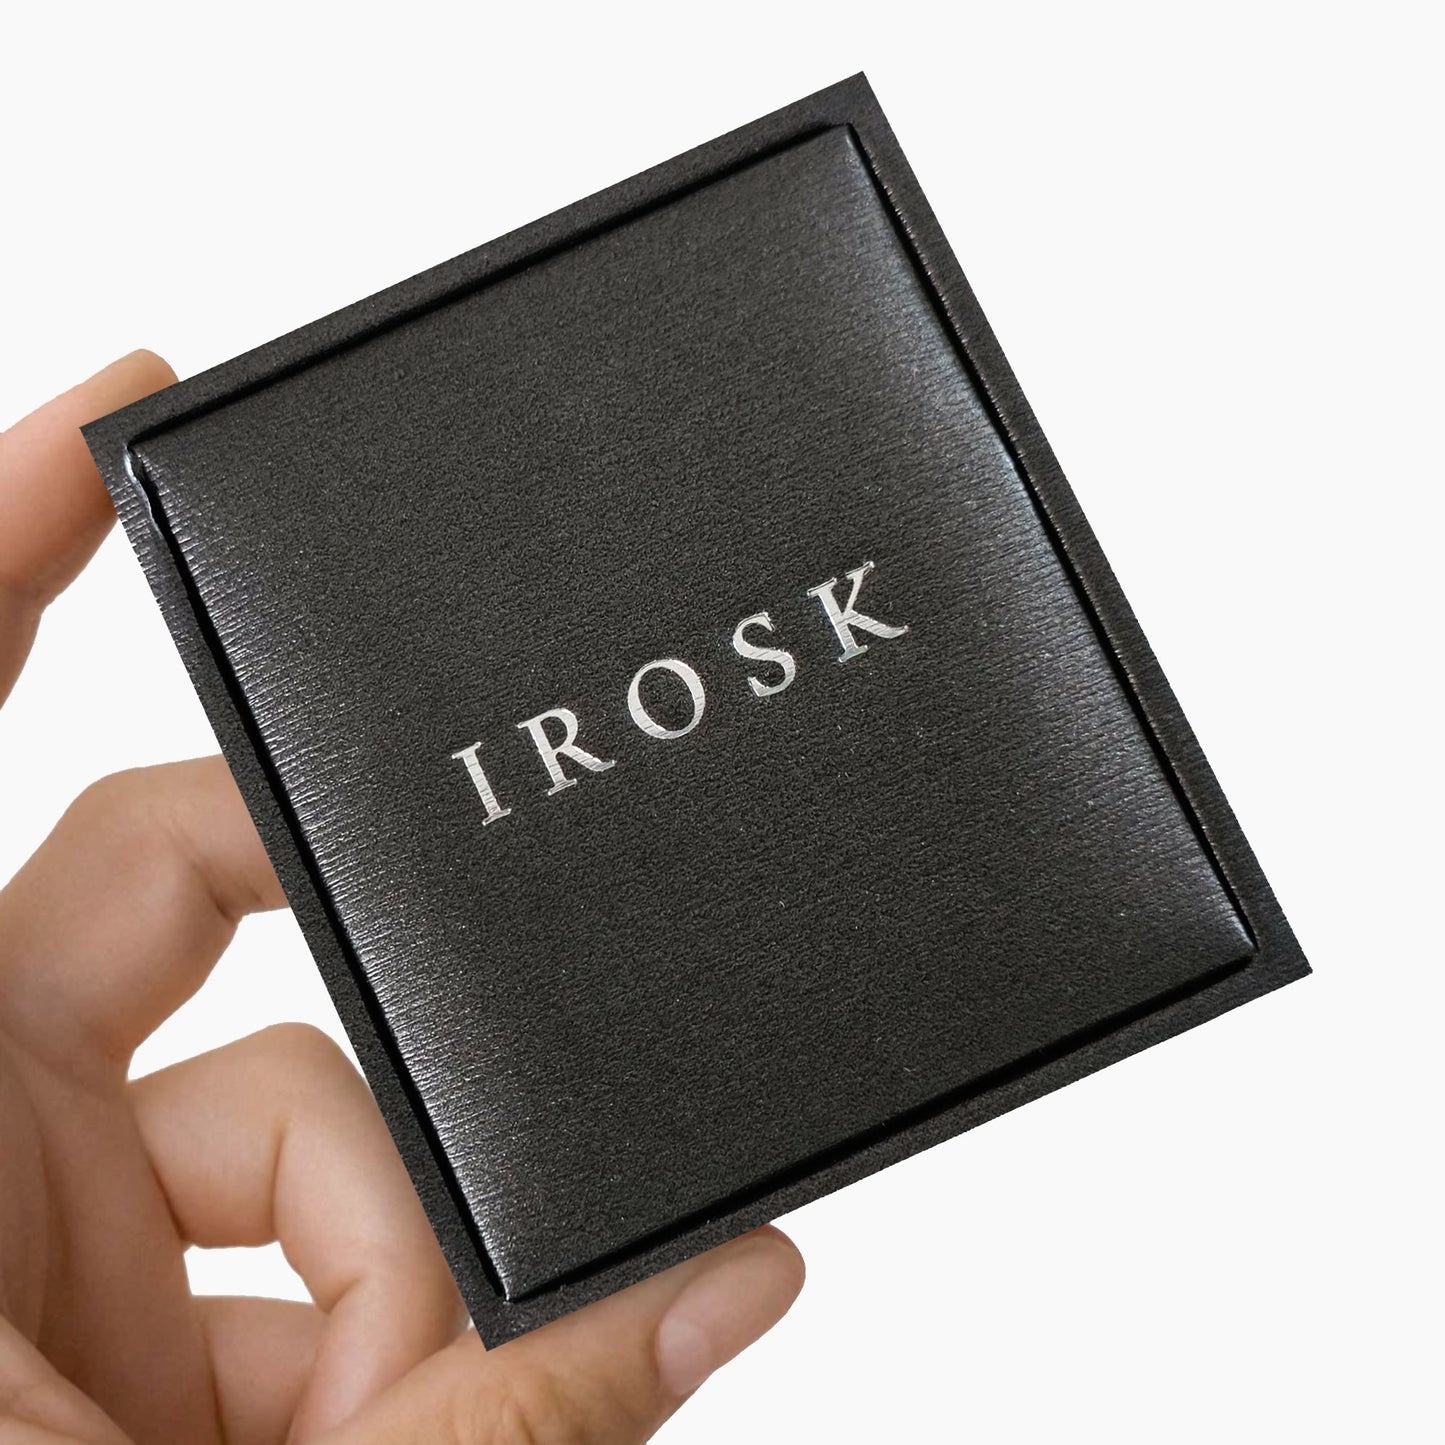 Irosk Rose Gold Blossom Earrings in Sterling Silver